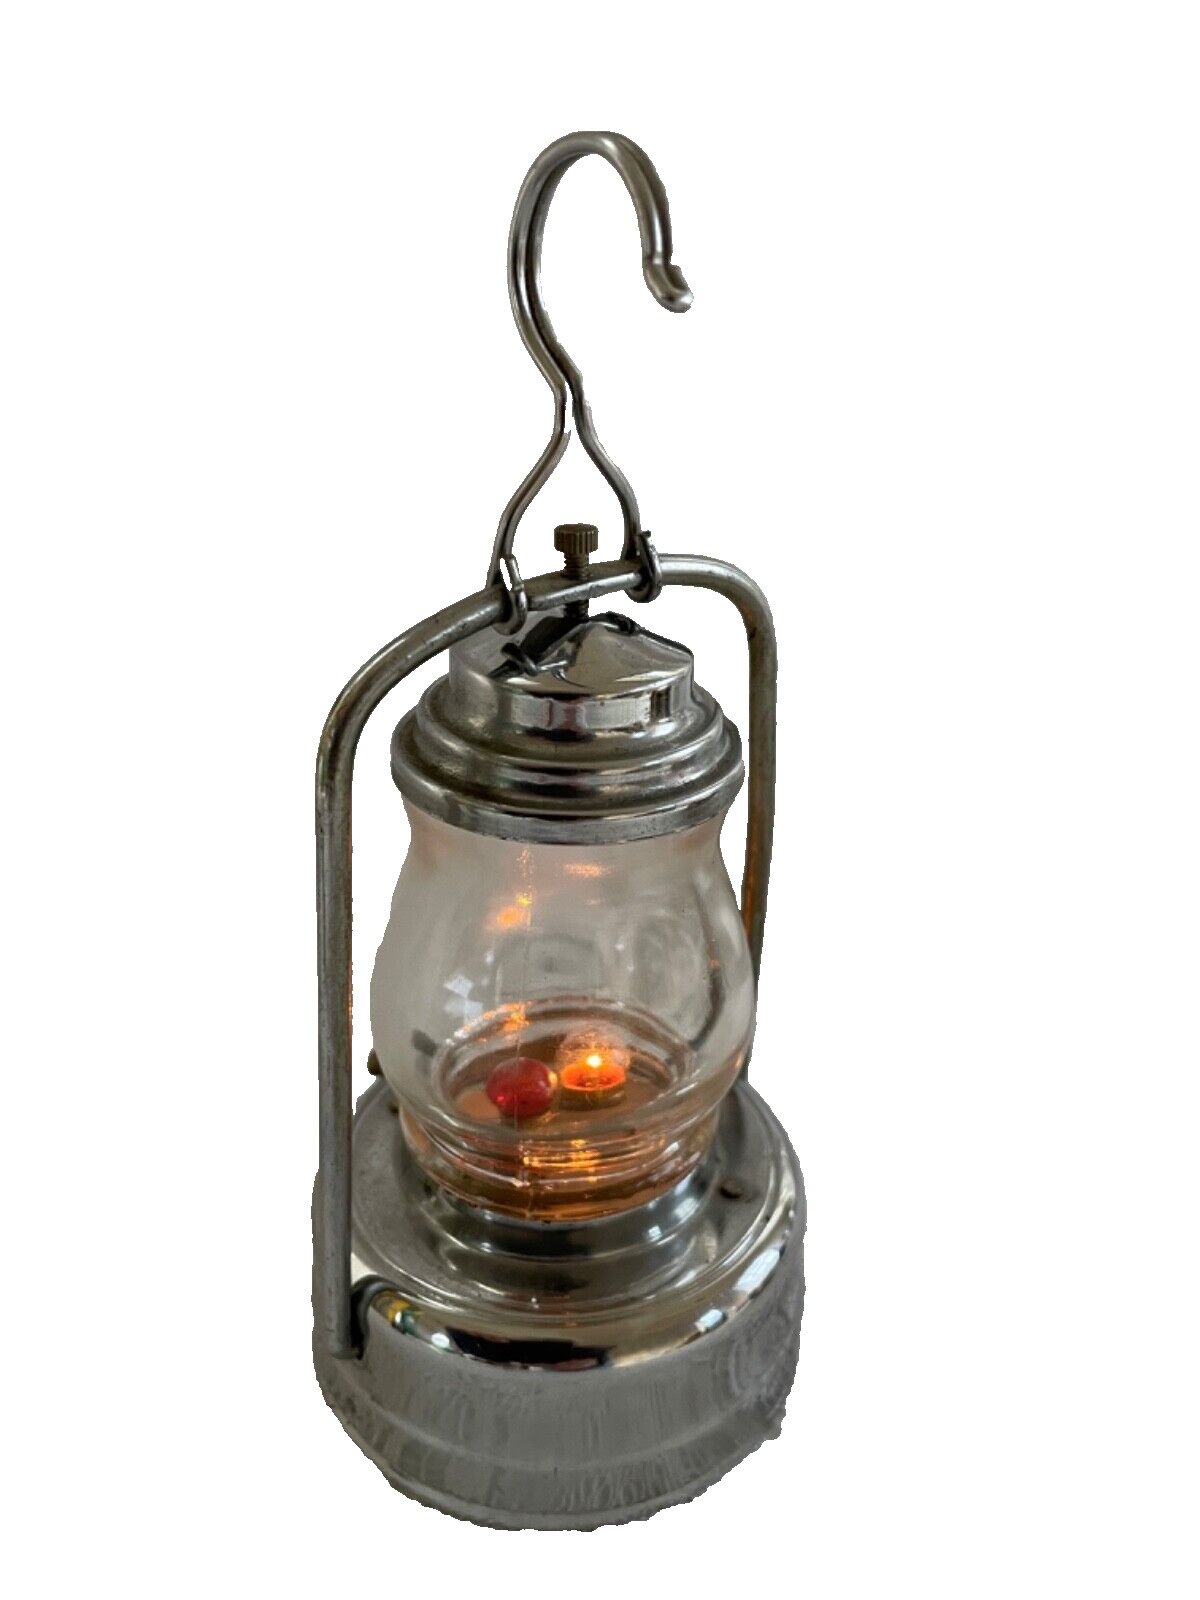 Vintage Crown Electric Small Hurricane Lamp Lantern Japan Works Hanging Light